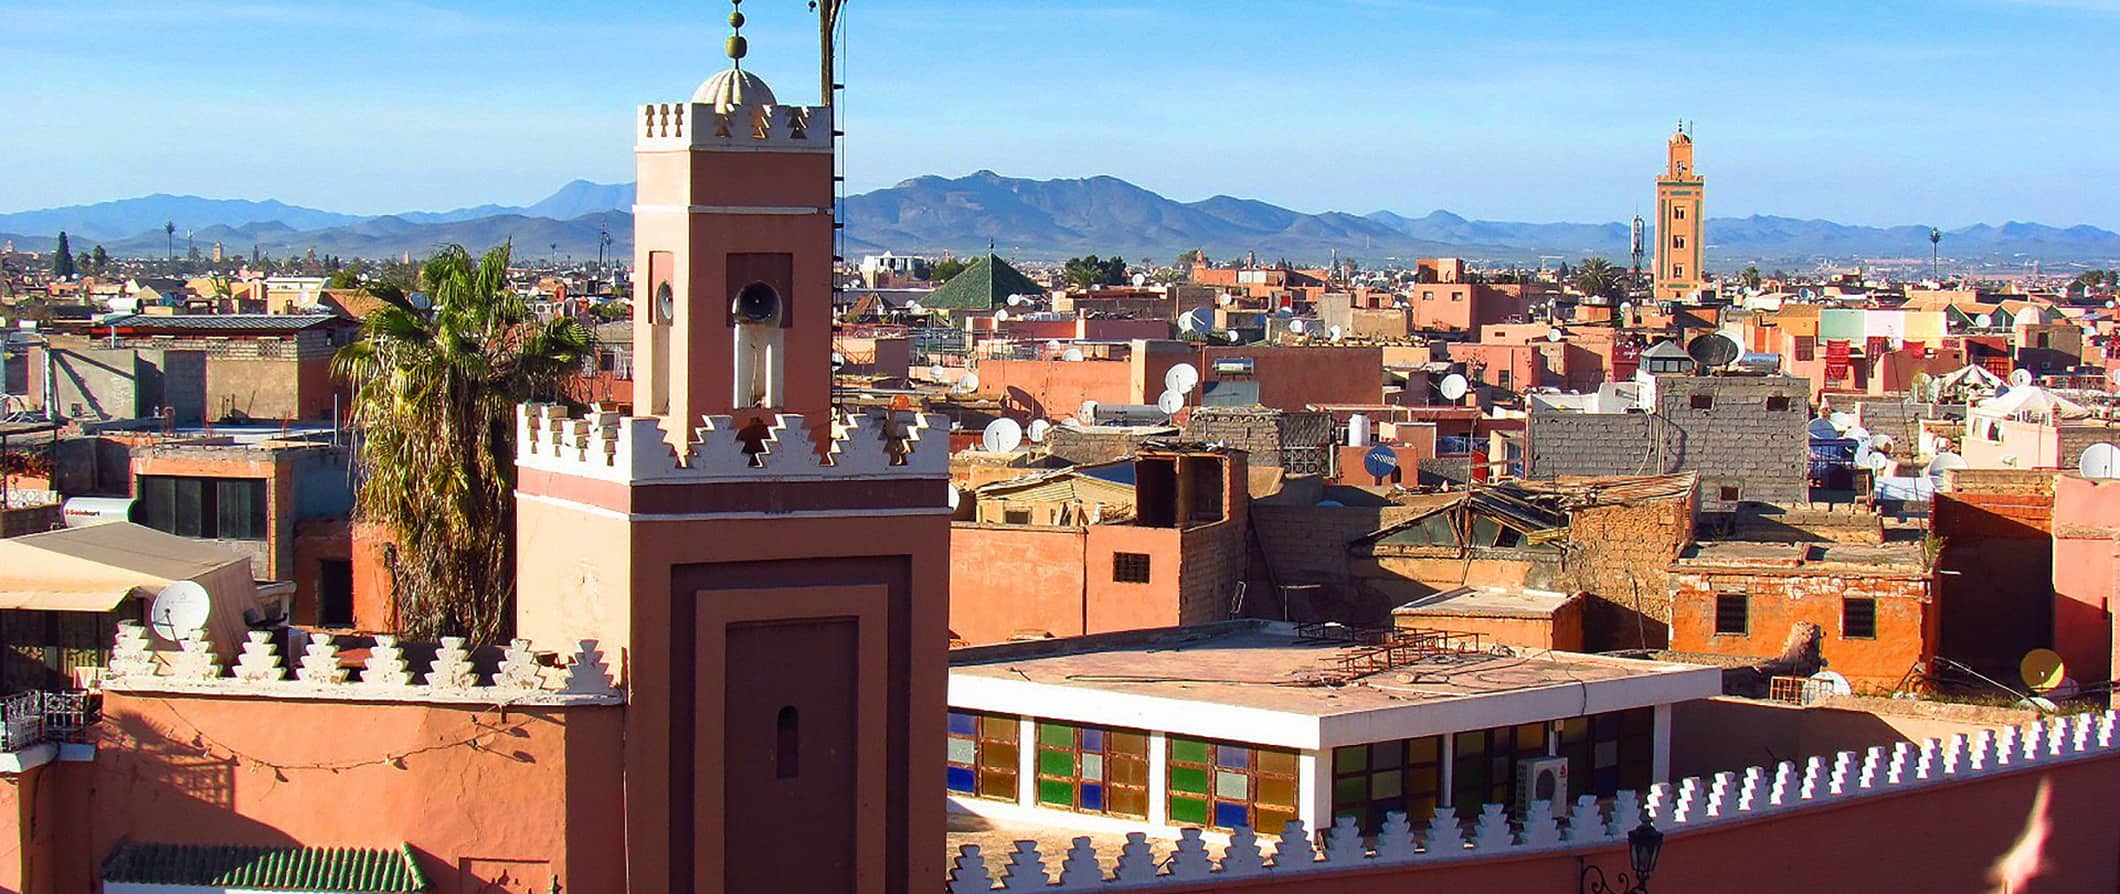 Vista da cidade de Marraquexe, Marrocos